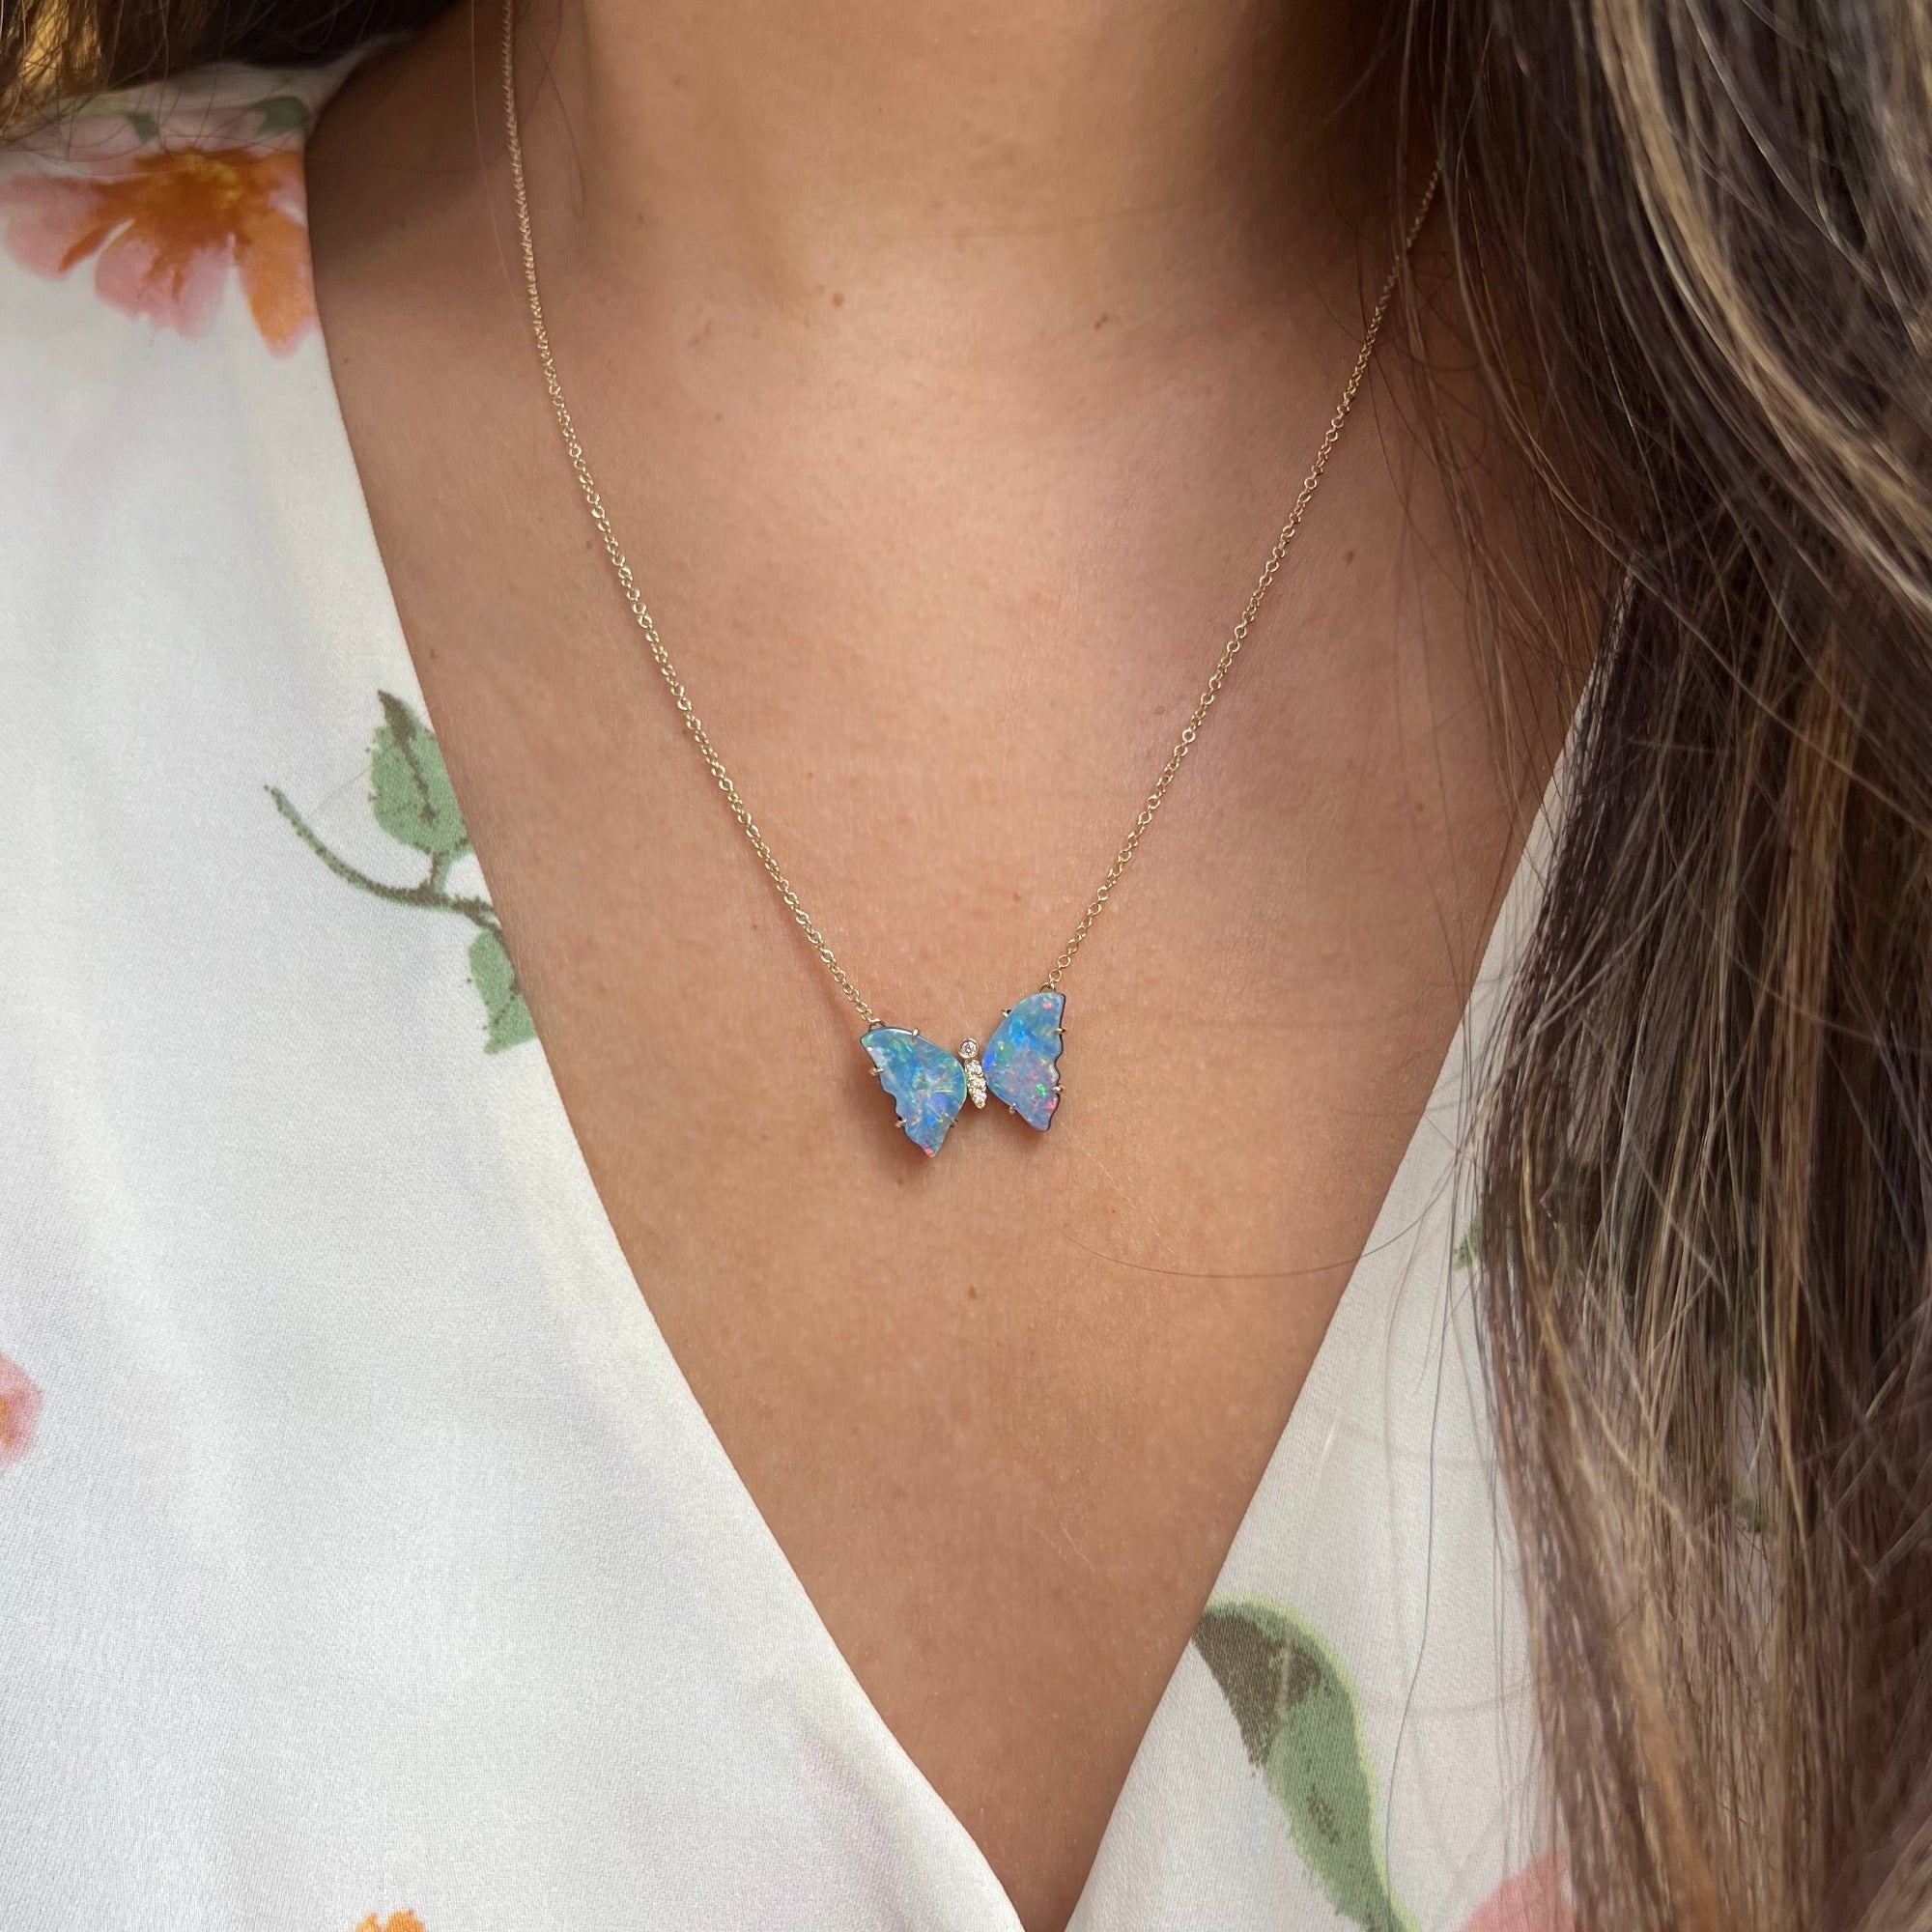 Mini pronged butterfly necklace boulder opal majestic sky